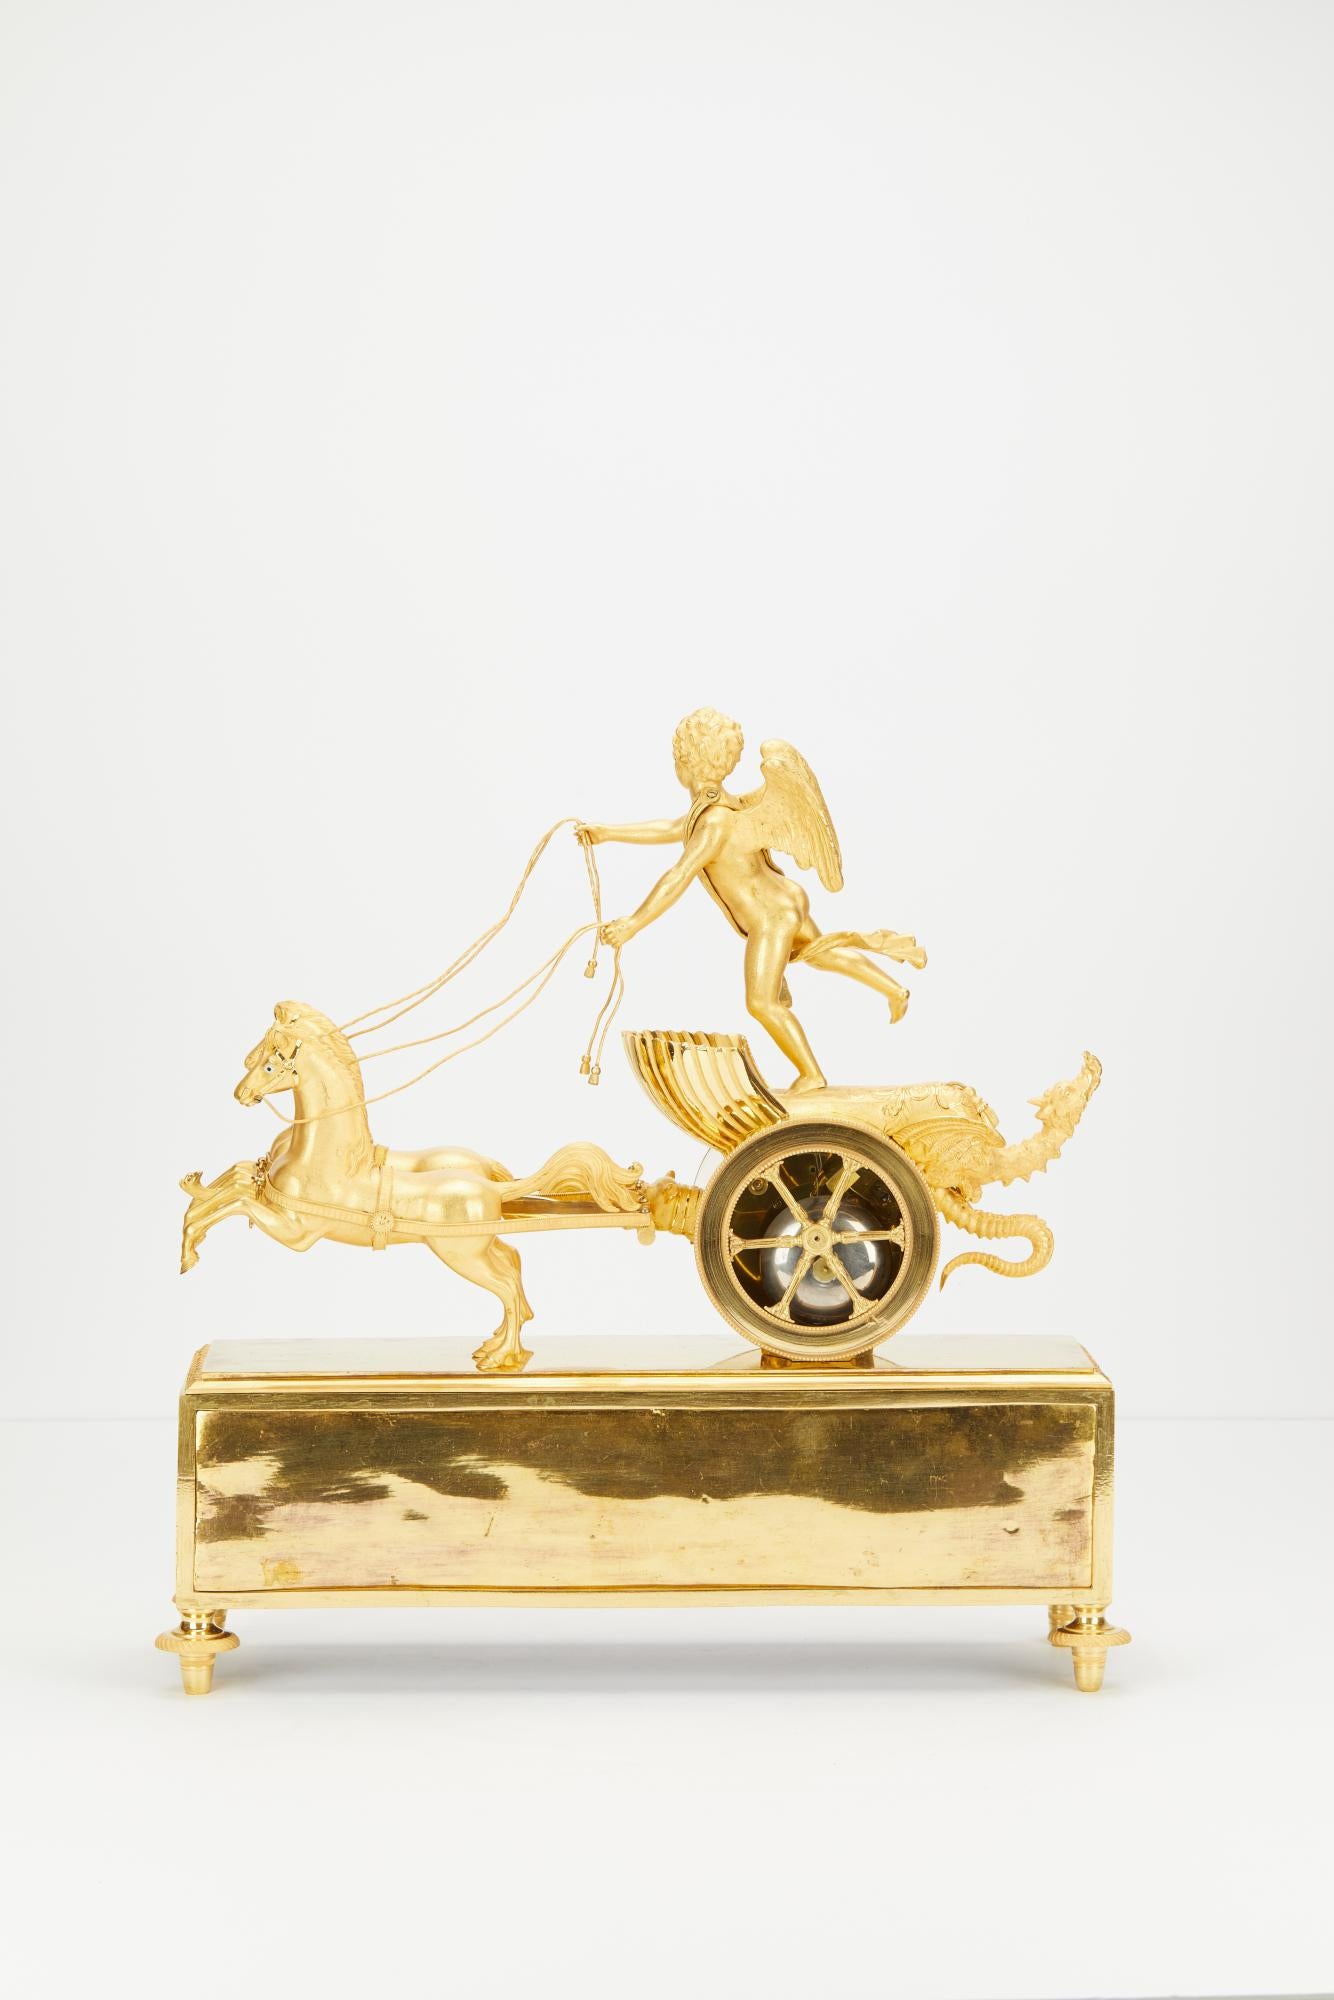 Charmante pendule Empire à char en bronze doré, vers 1810, avec mouvement à 8 jours, sonnerie, dans son coffret doré d'origine.